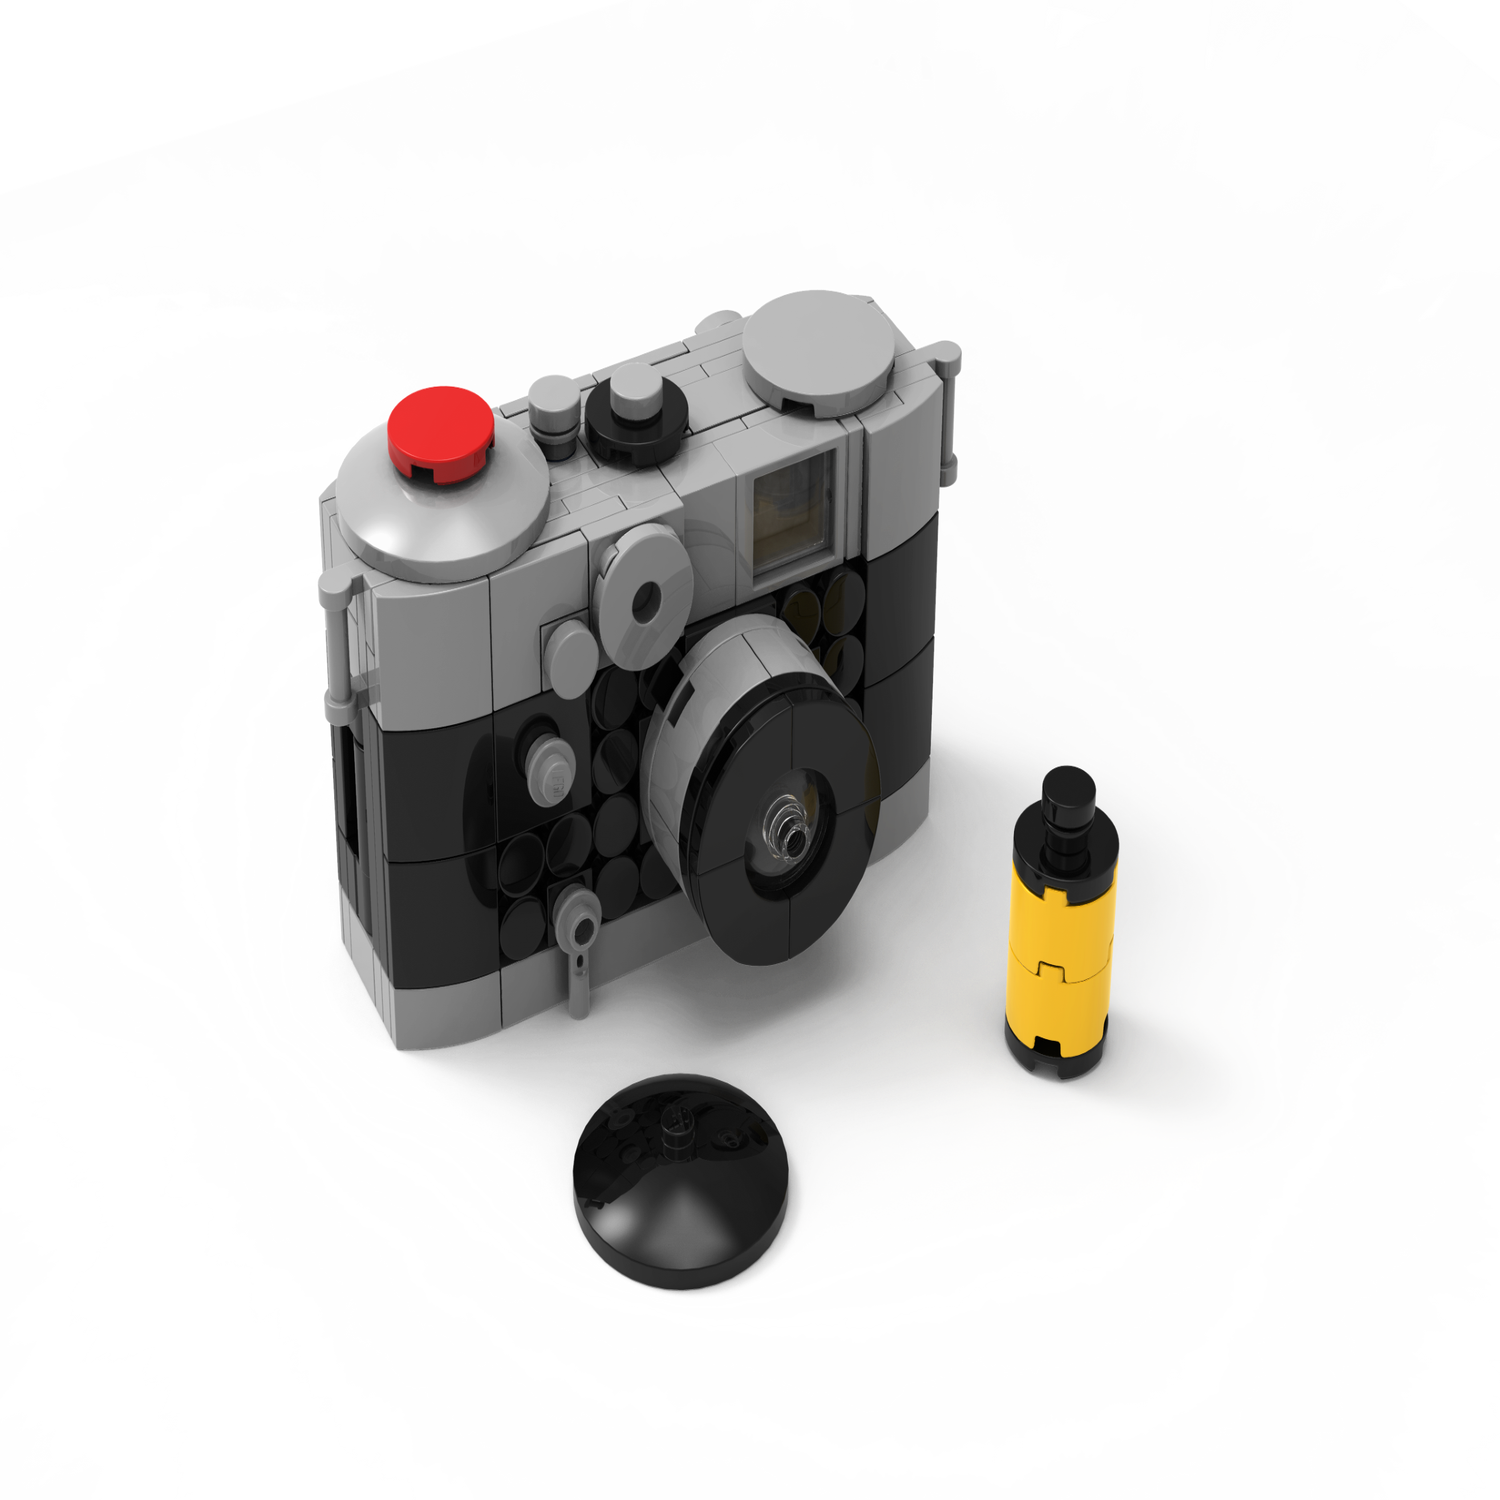 Una cámara hecha de LEGOS, ¿la habías visto antes? 📸🧱🌈 #lego #legocamera  #vintage #legodigitalcamera #photography #photographer #coyoacan…